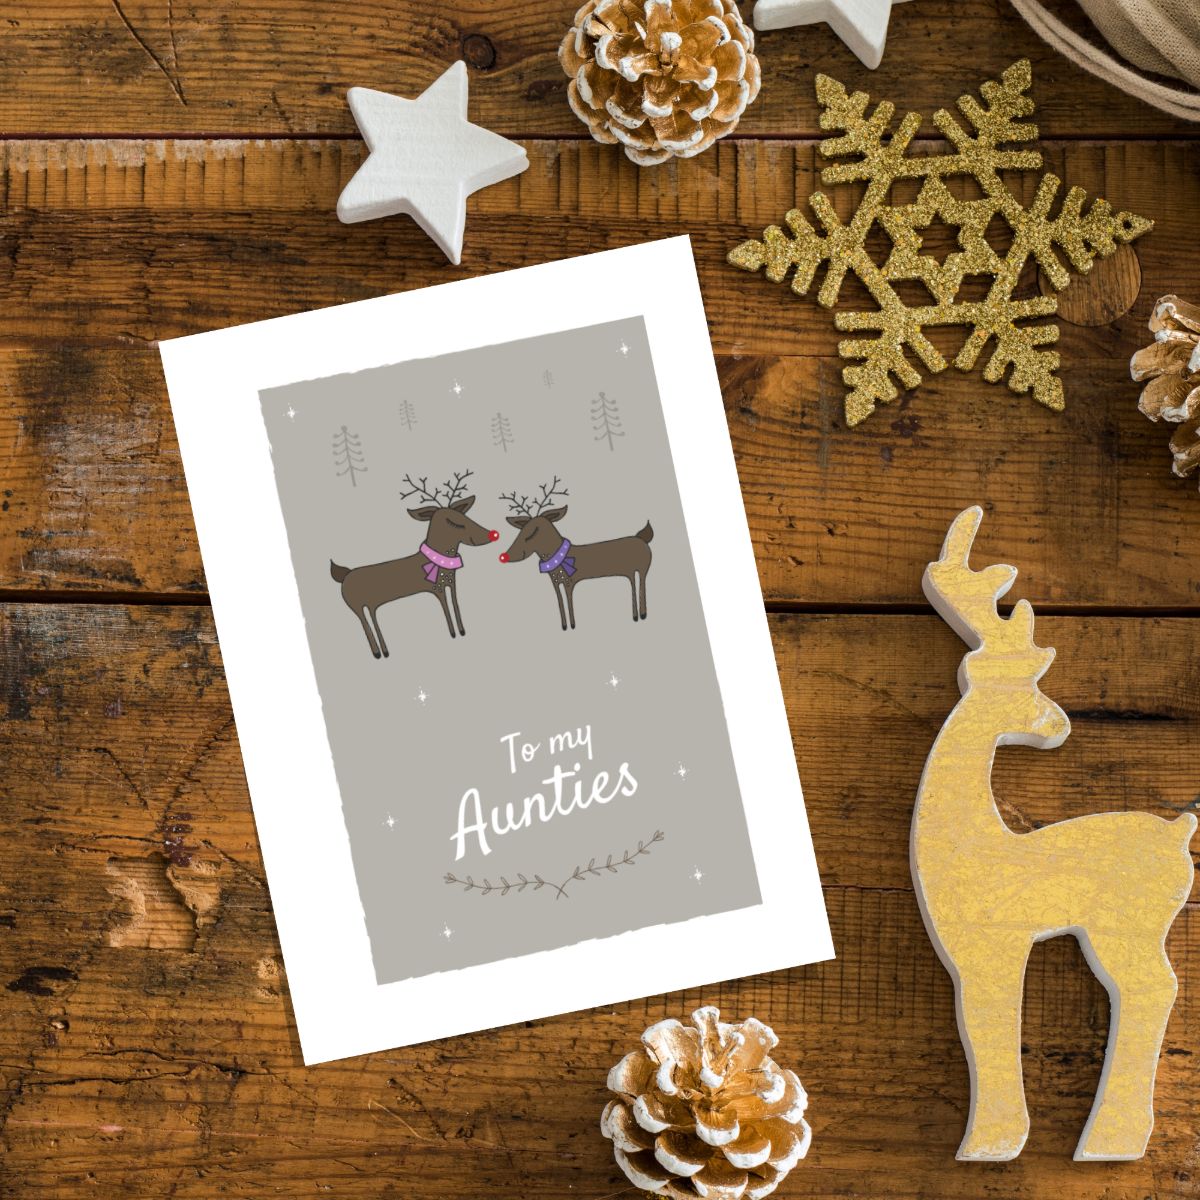 reindeer-design-christmas-card-two-aunties